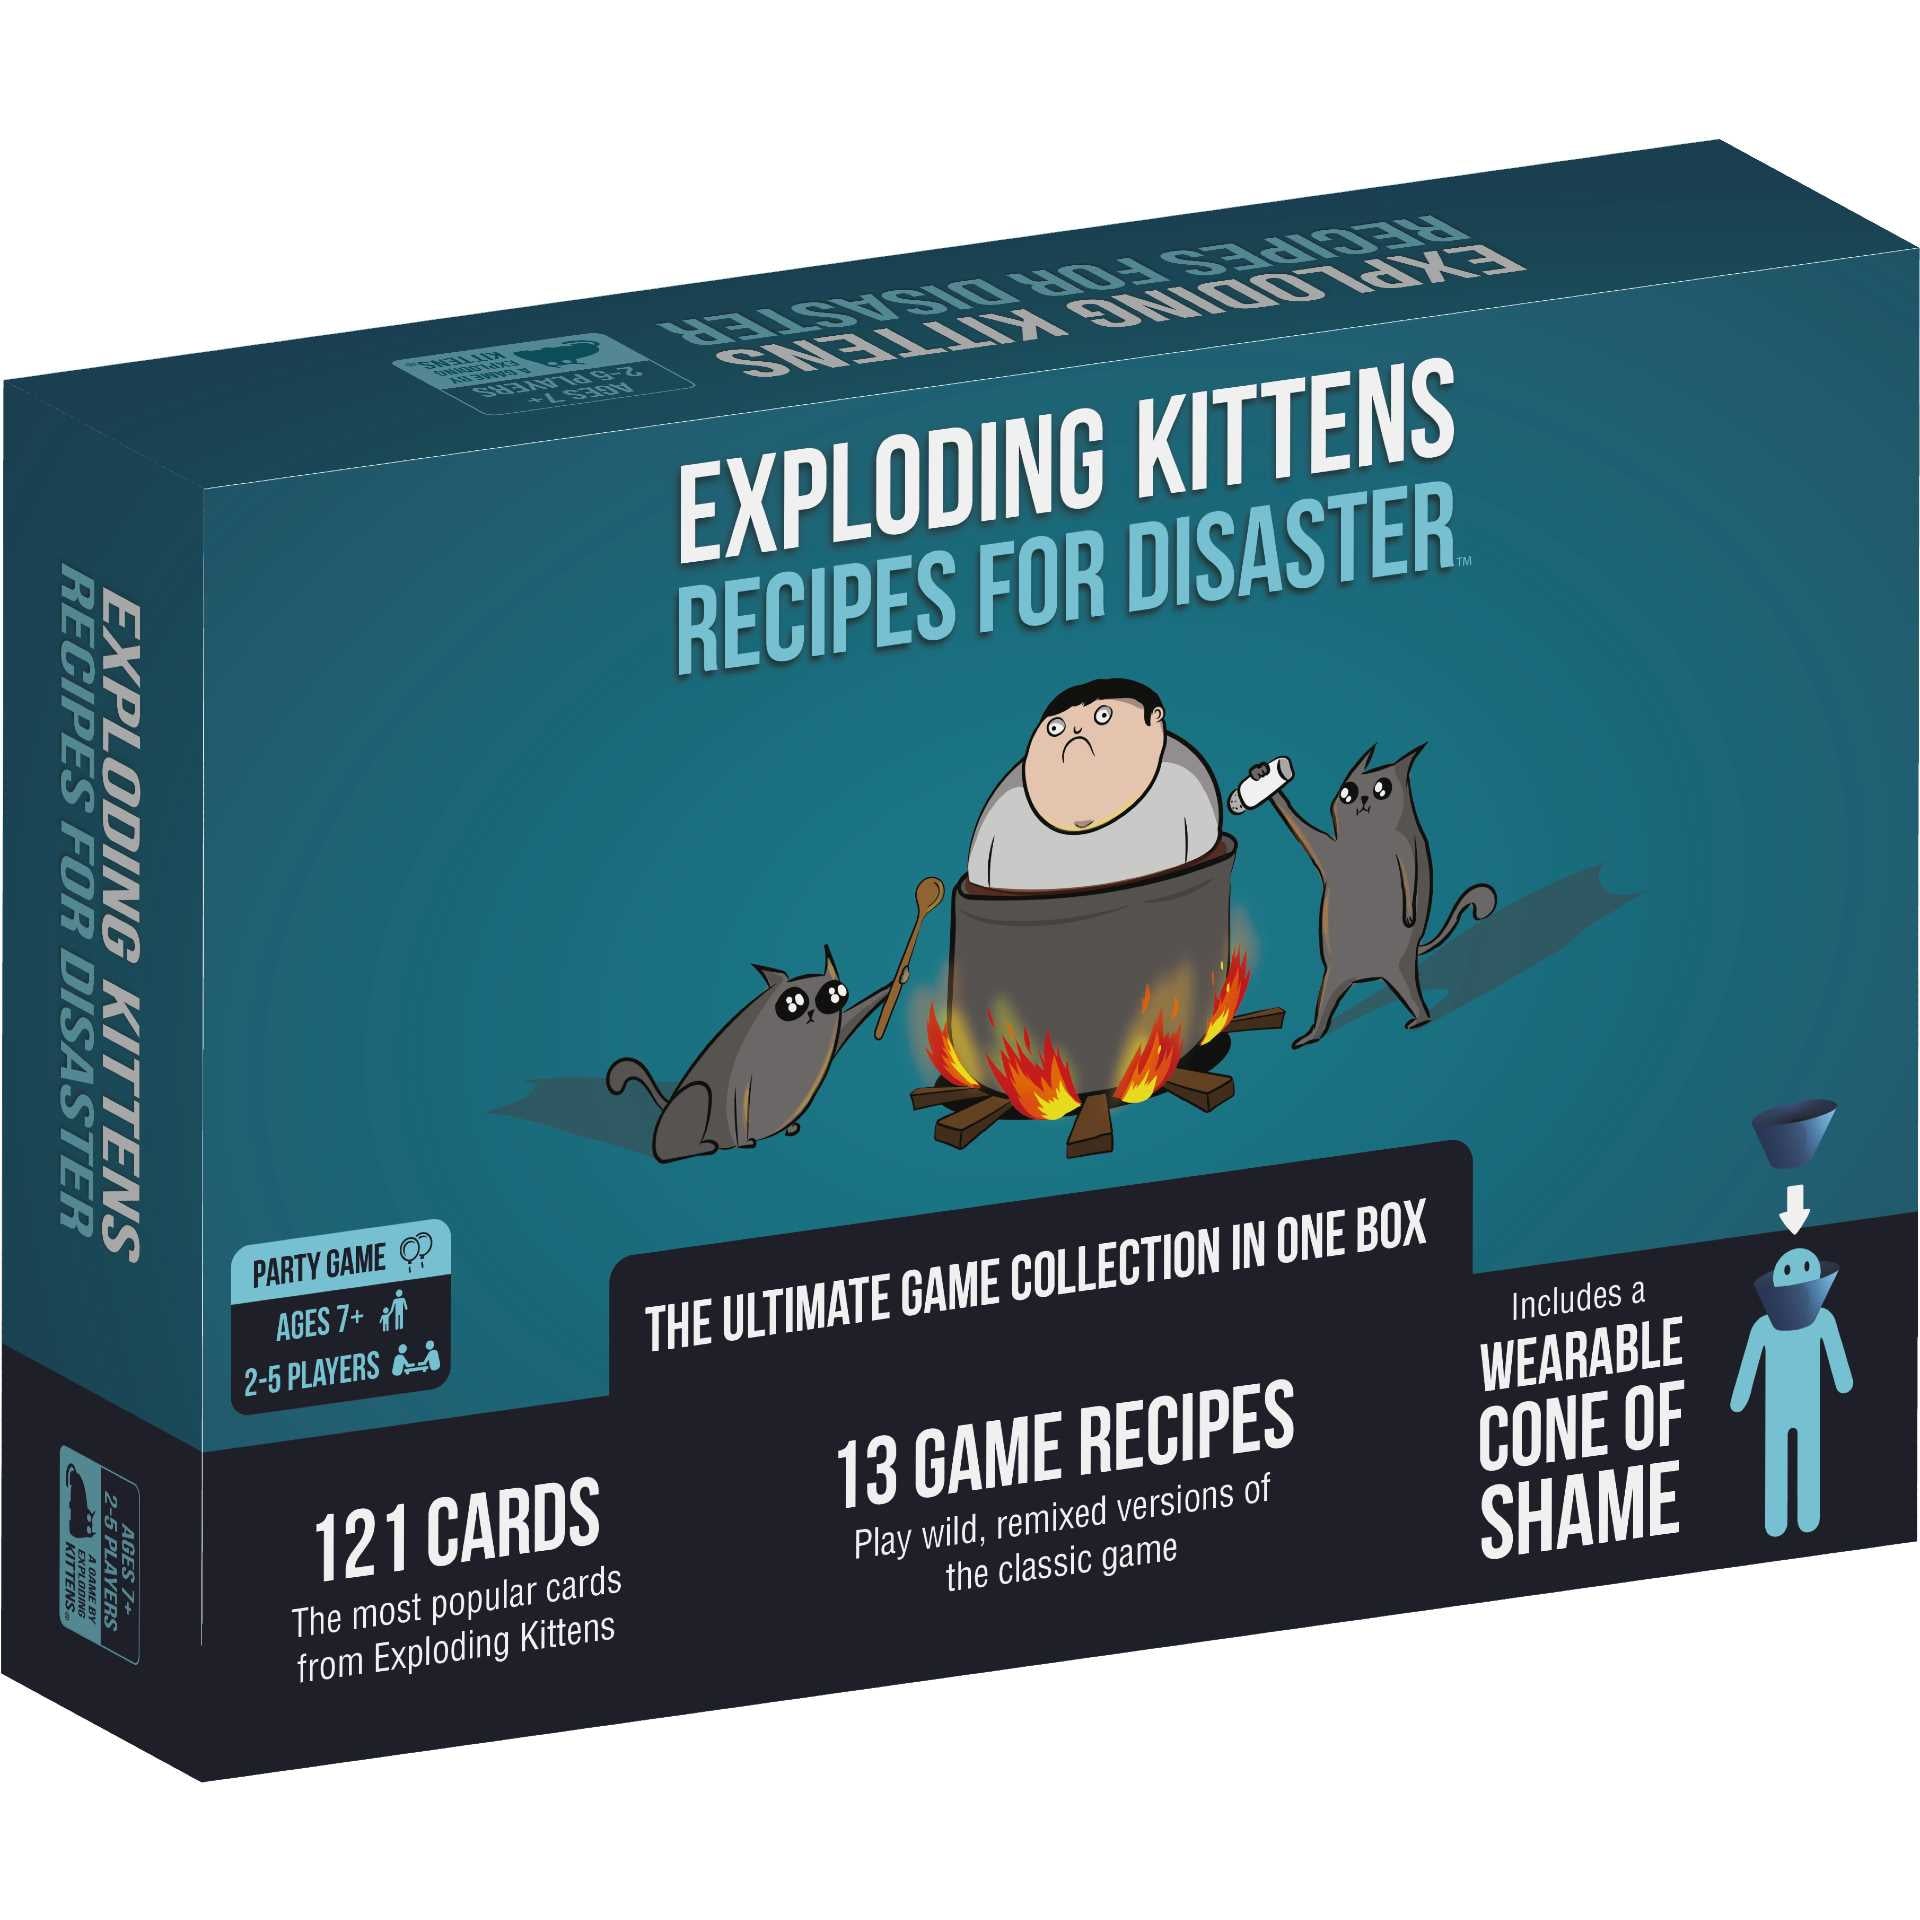 Exploding Kittens Recipes for Disaster (7000091689159)